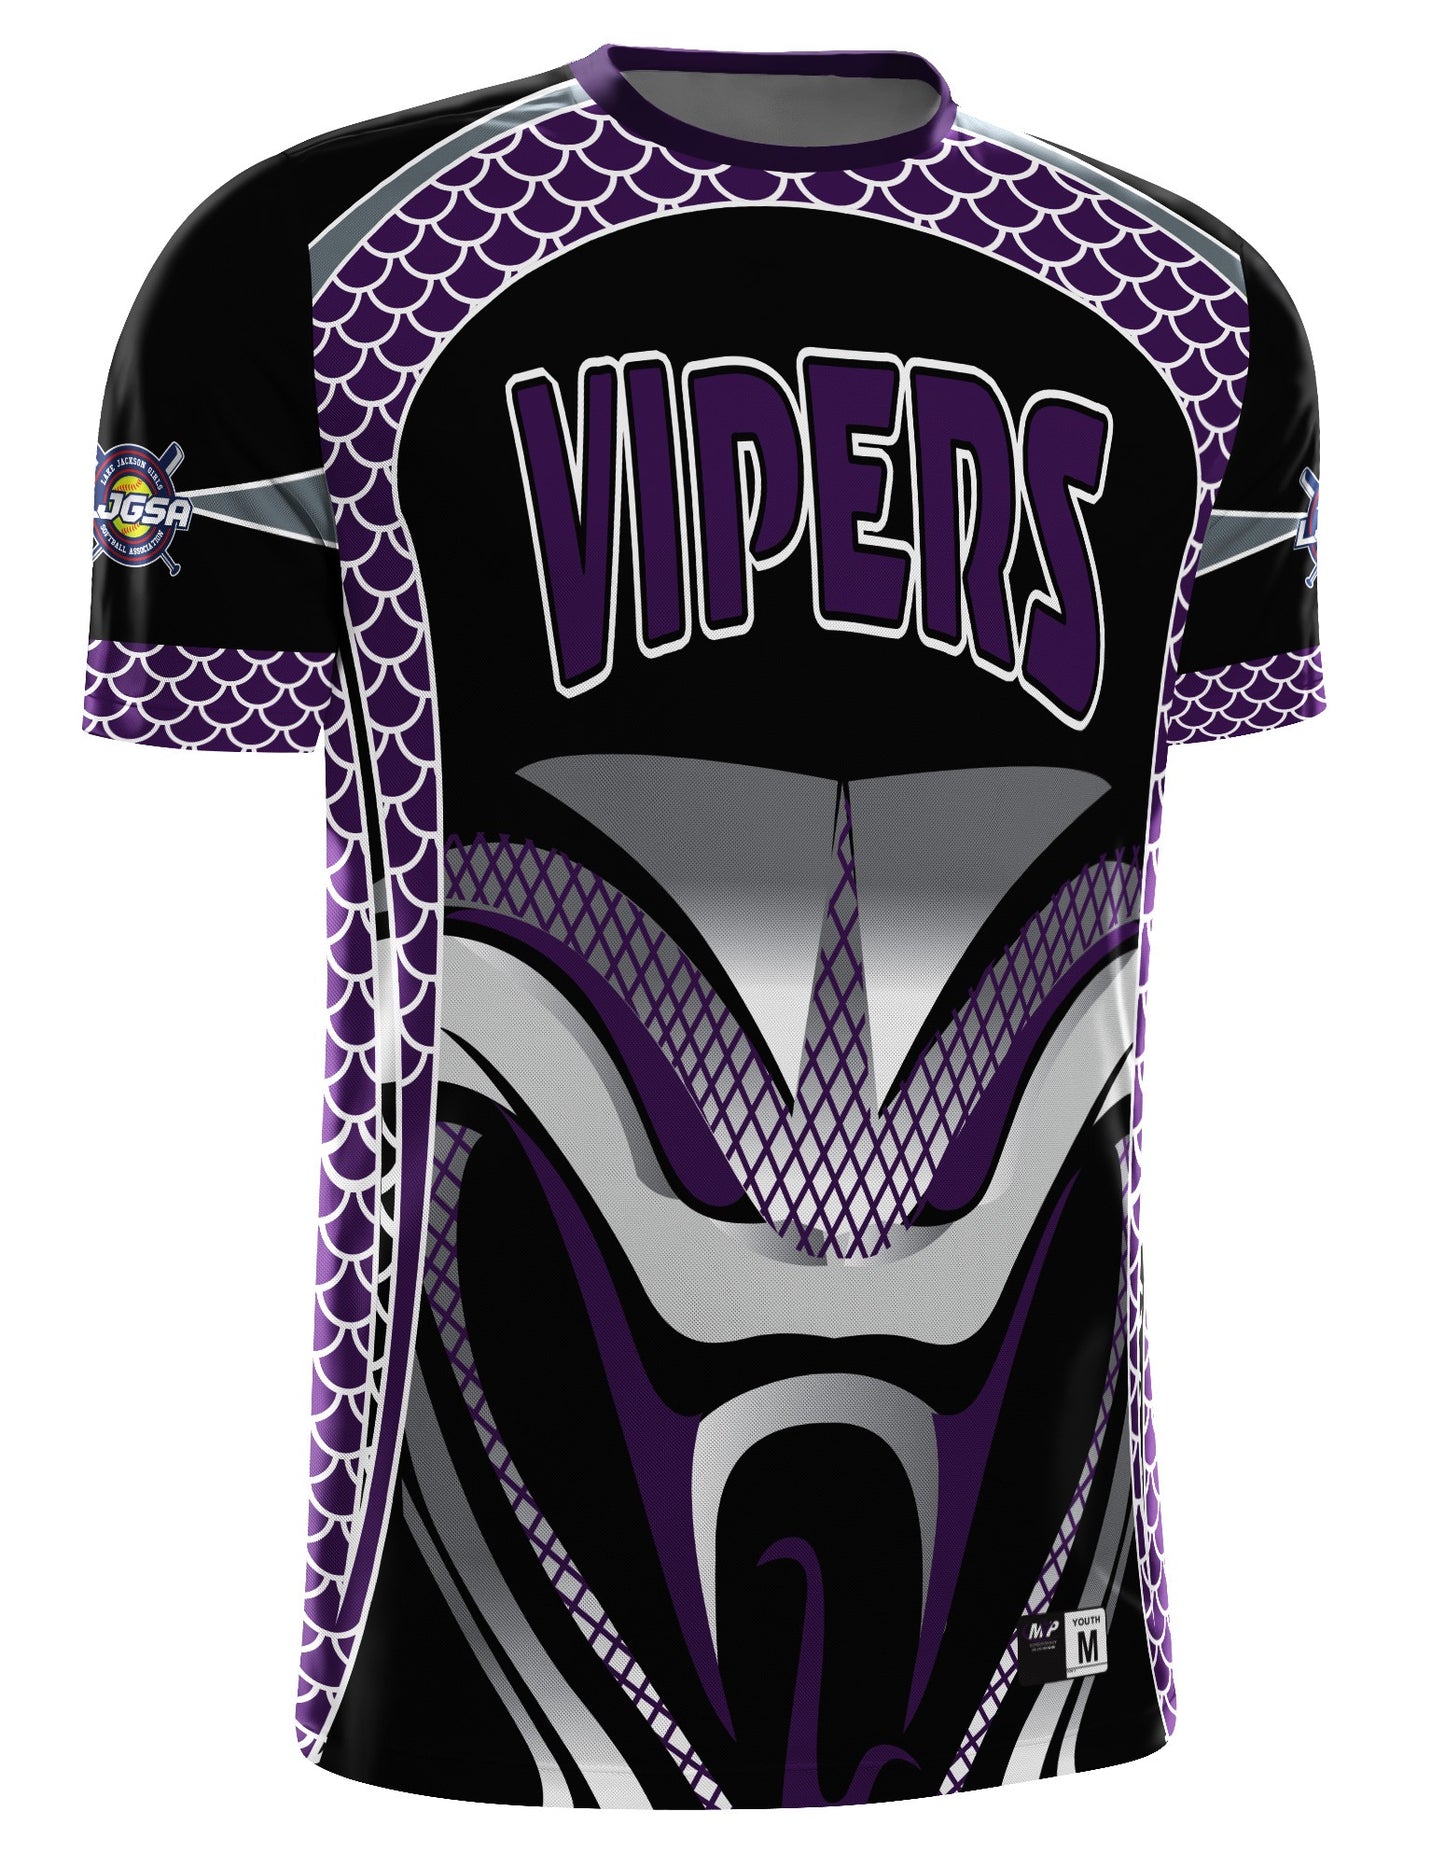 Vipers Fan Jersey